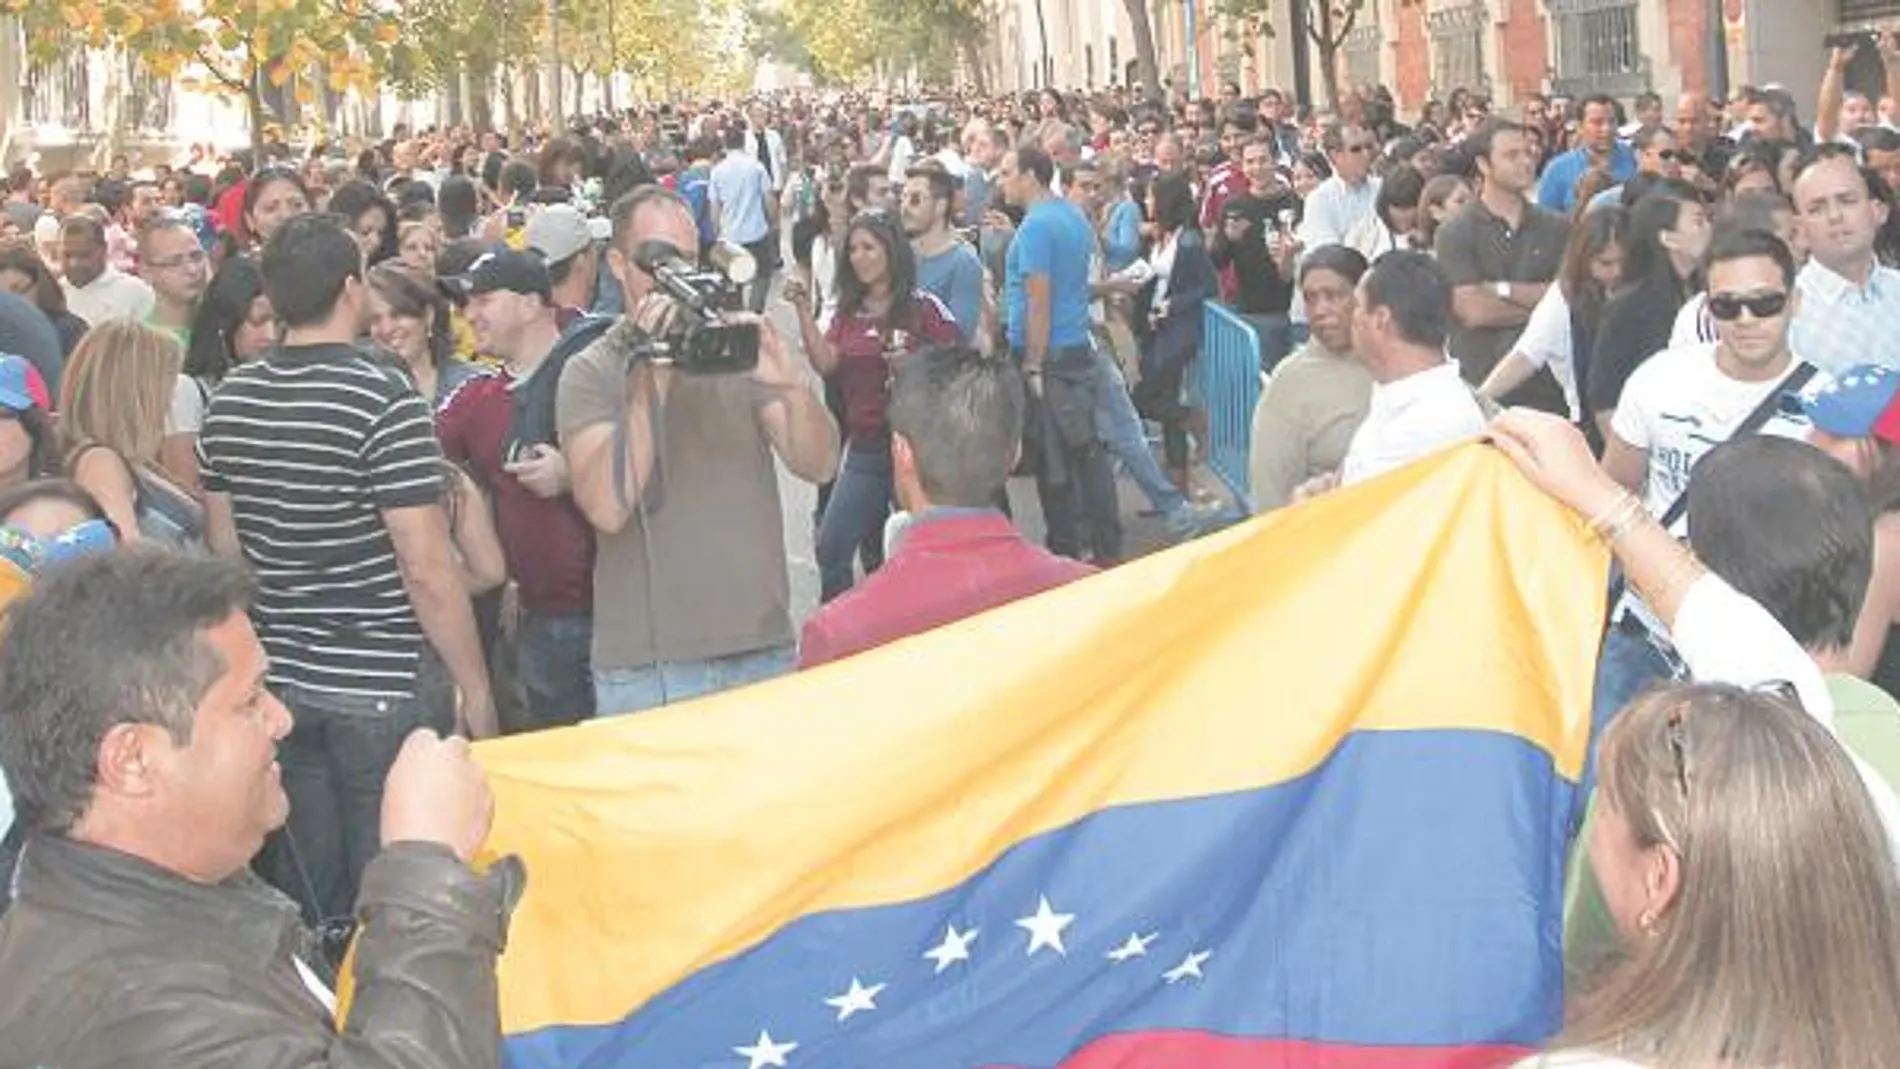 BANDERAS Y GORRAS TRICOLOR. Los símbolos venezolanos se dejaban ver en la larga fila para votar, que llegaba de Recoletos a la Puerta de Alcalá